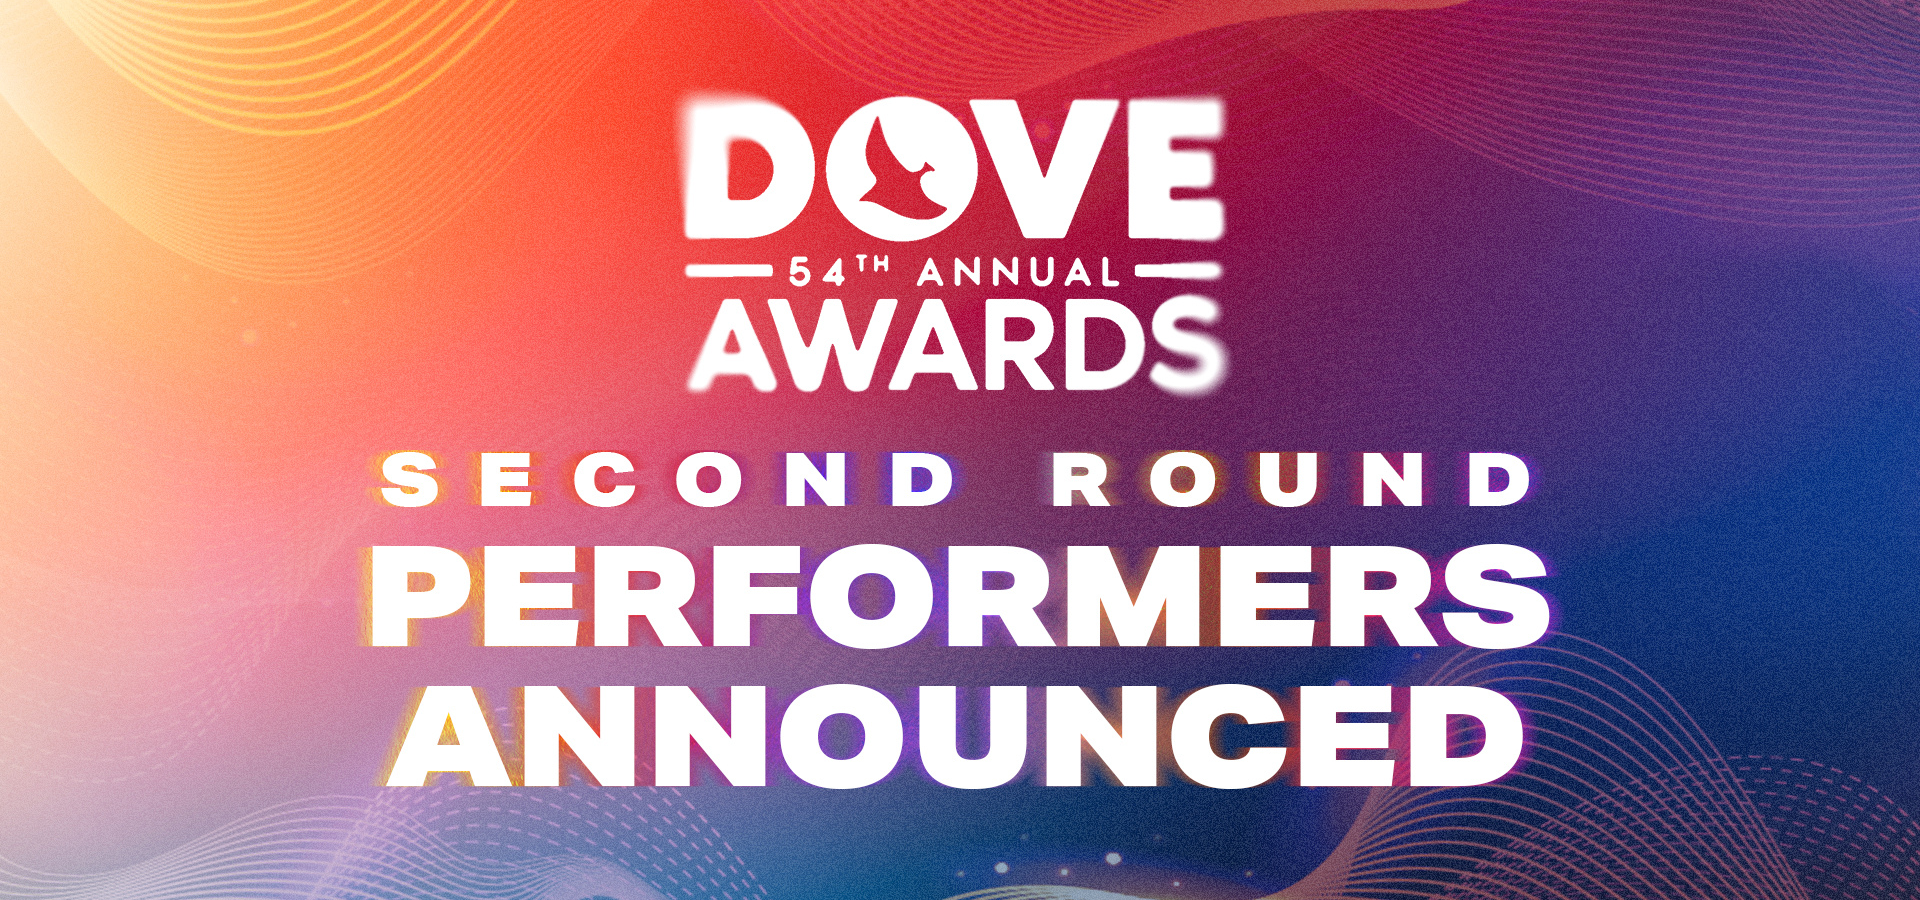 La 54ª Edición De Los Dove Awards De La GMA Anuncia La Segunda Ronda De Artistas Participantes